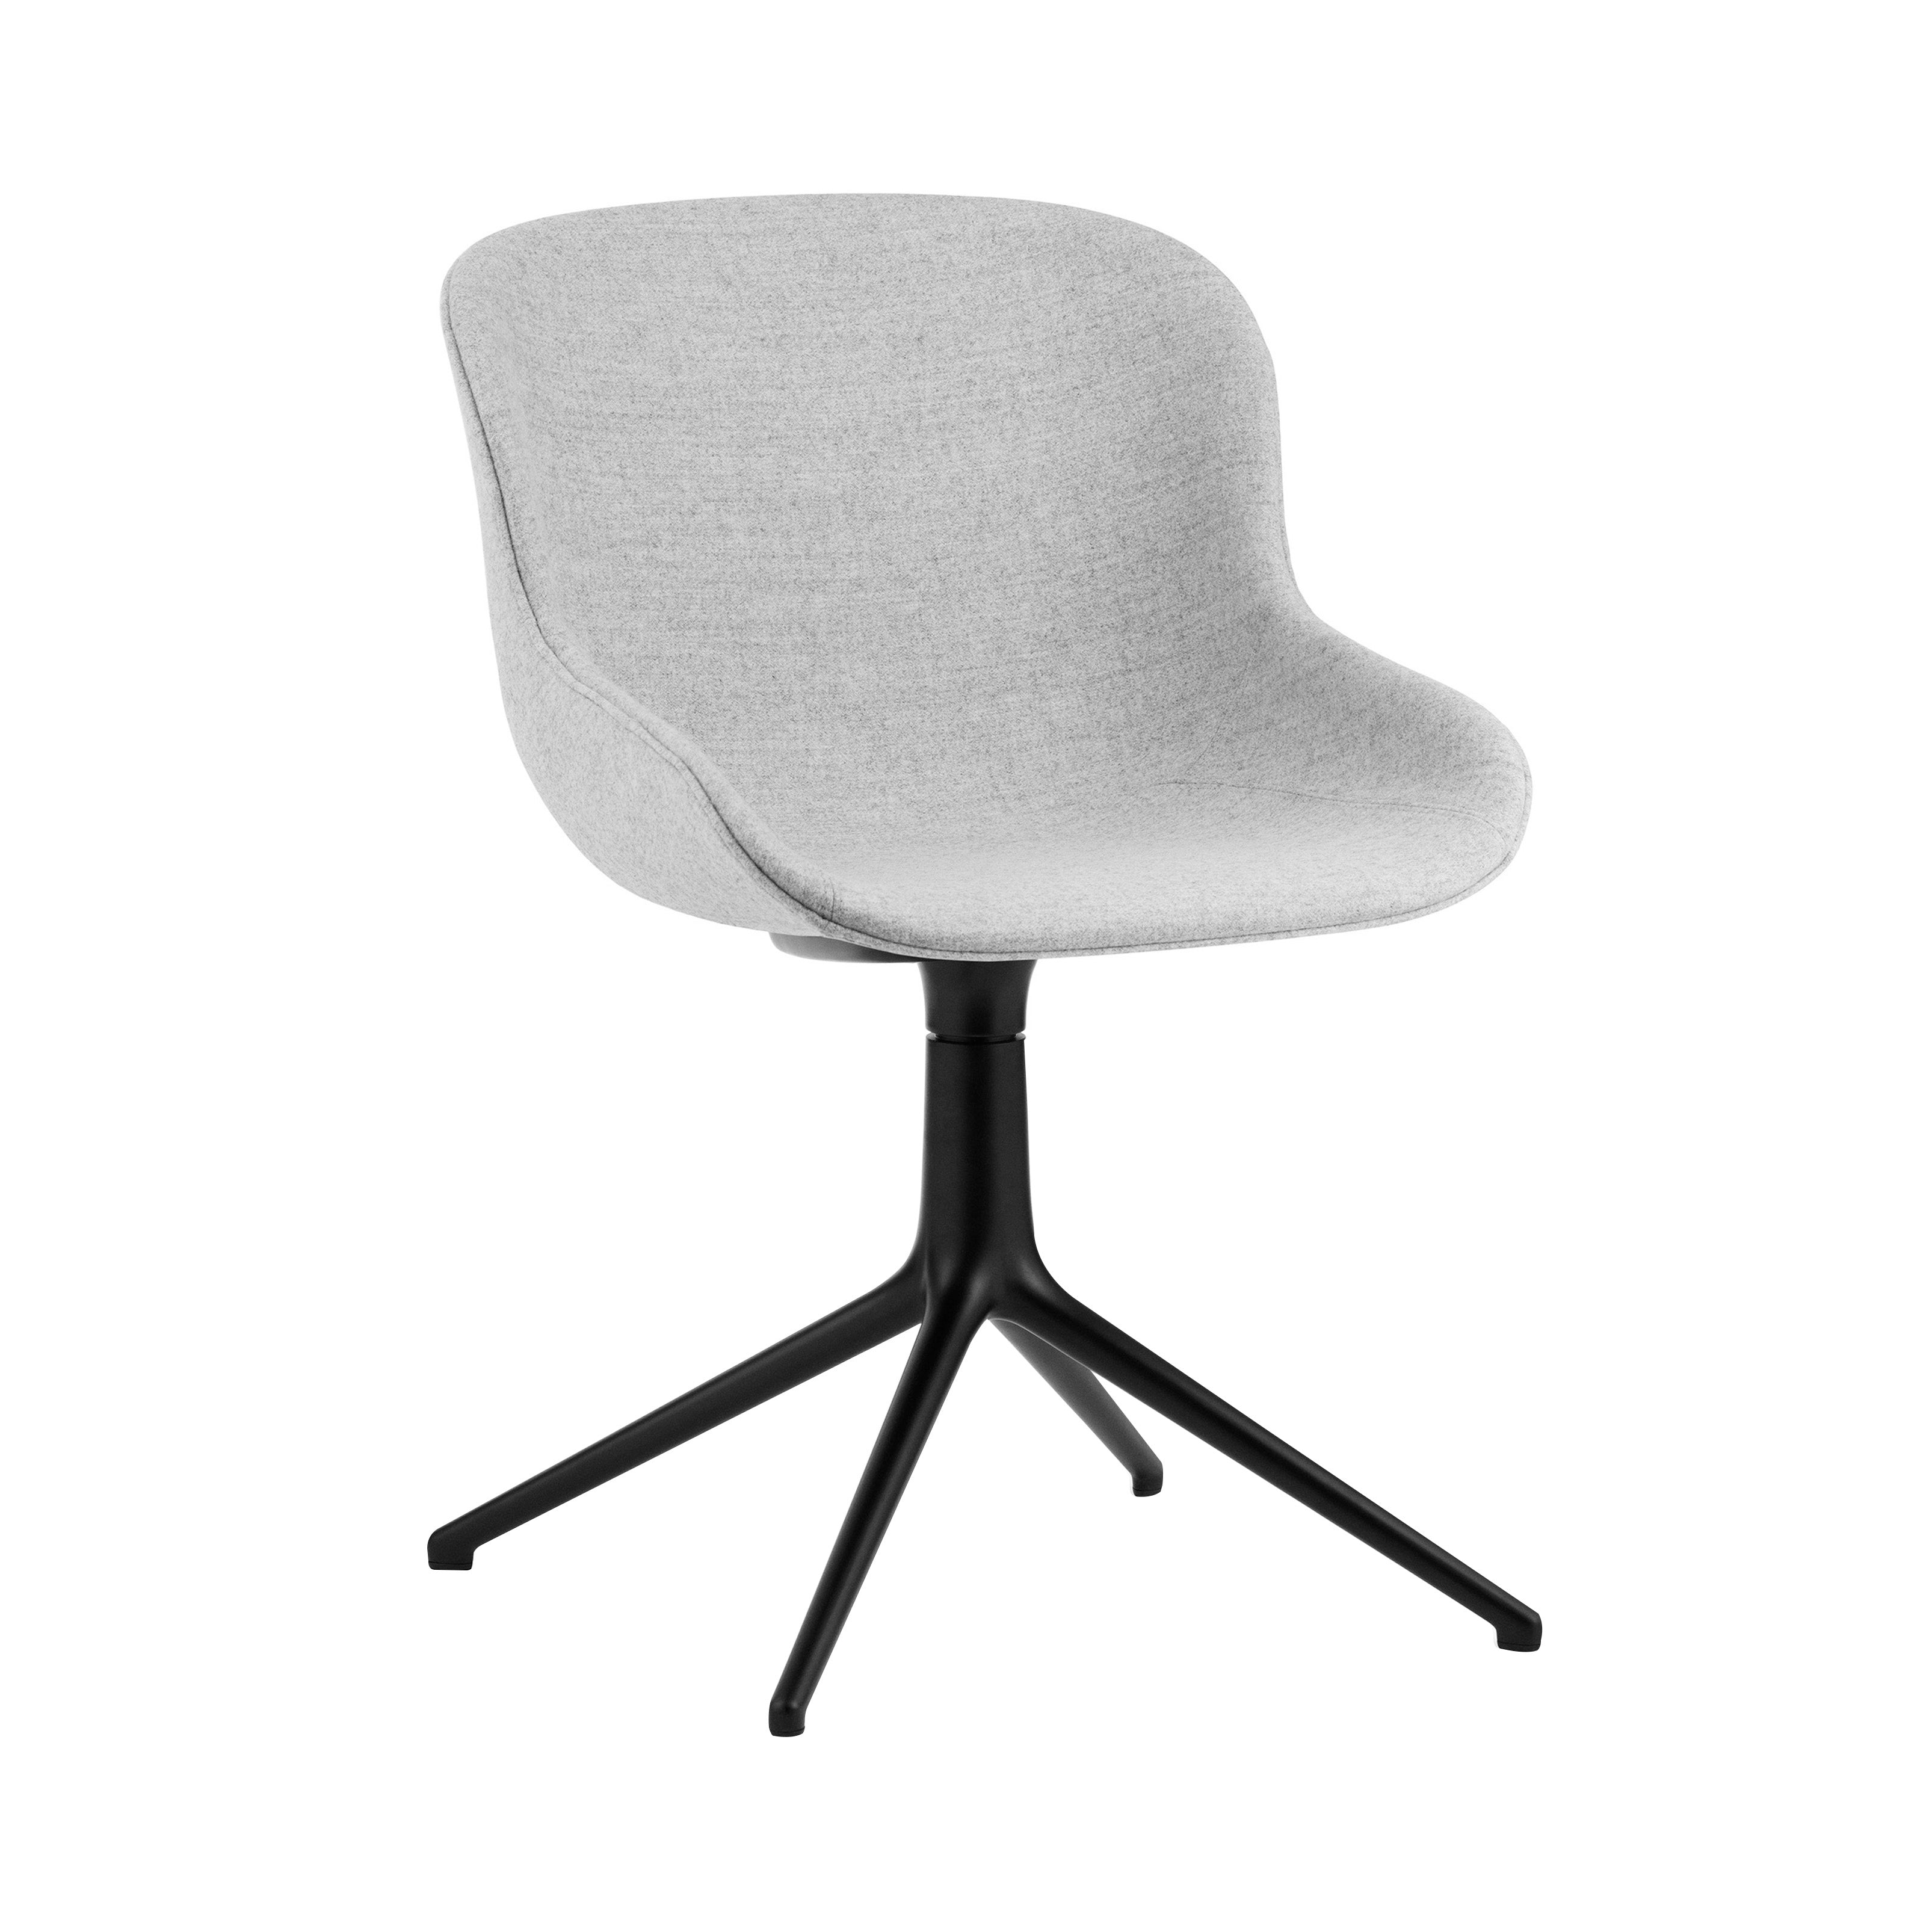 Hyg 4 Legs Swivel Chair: Fully Upholstered + Black Aluminum